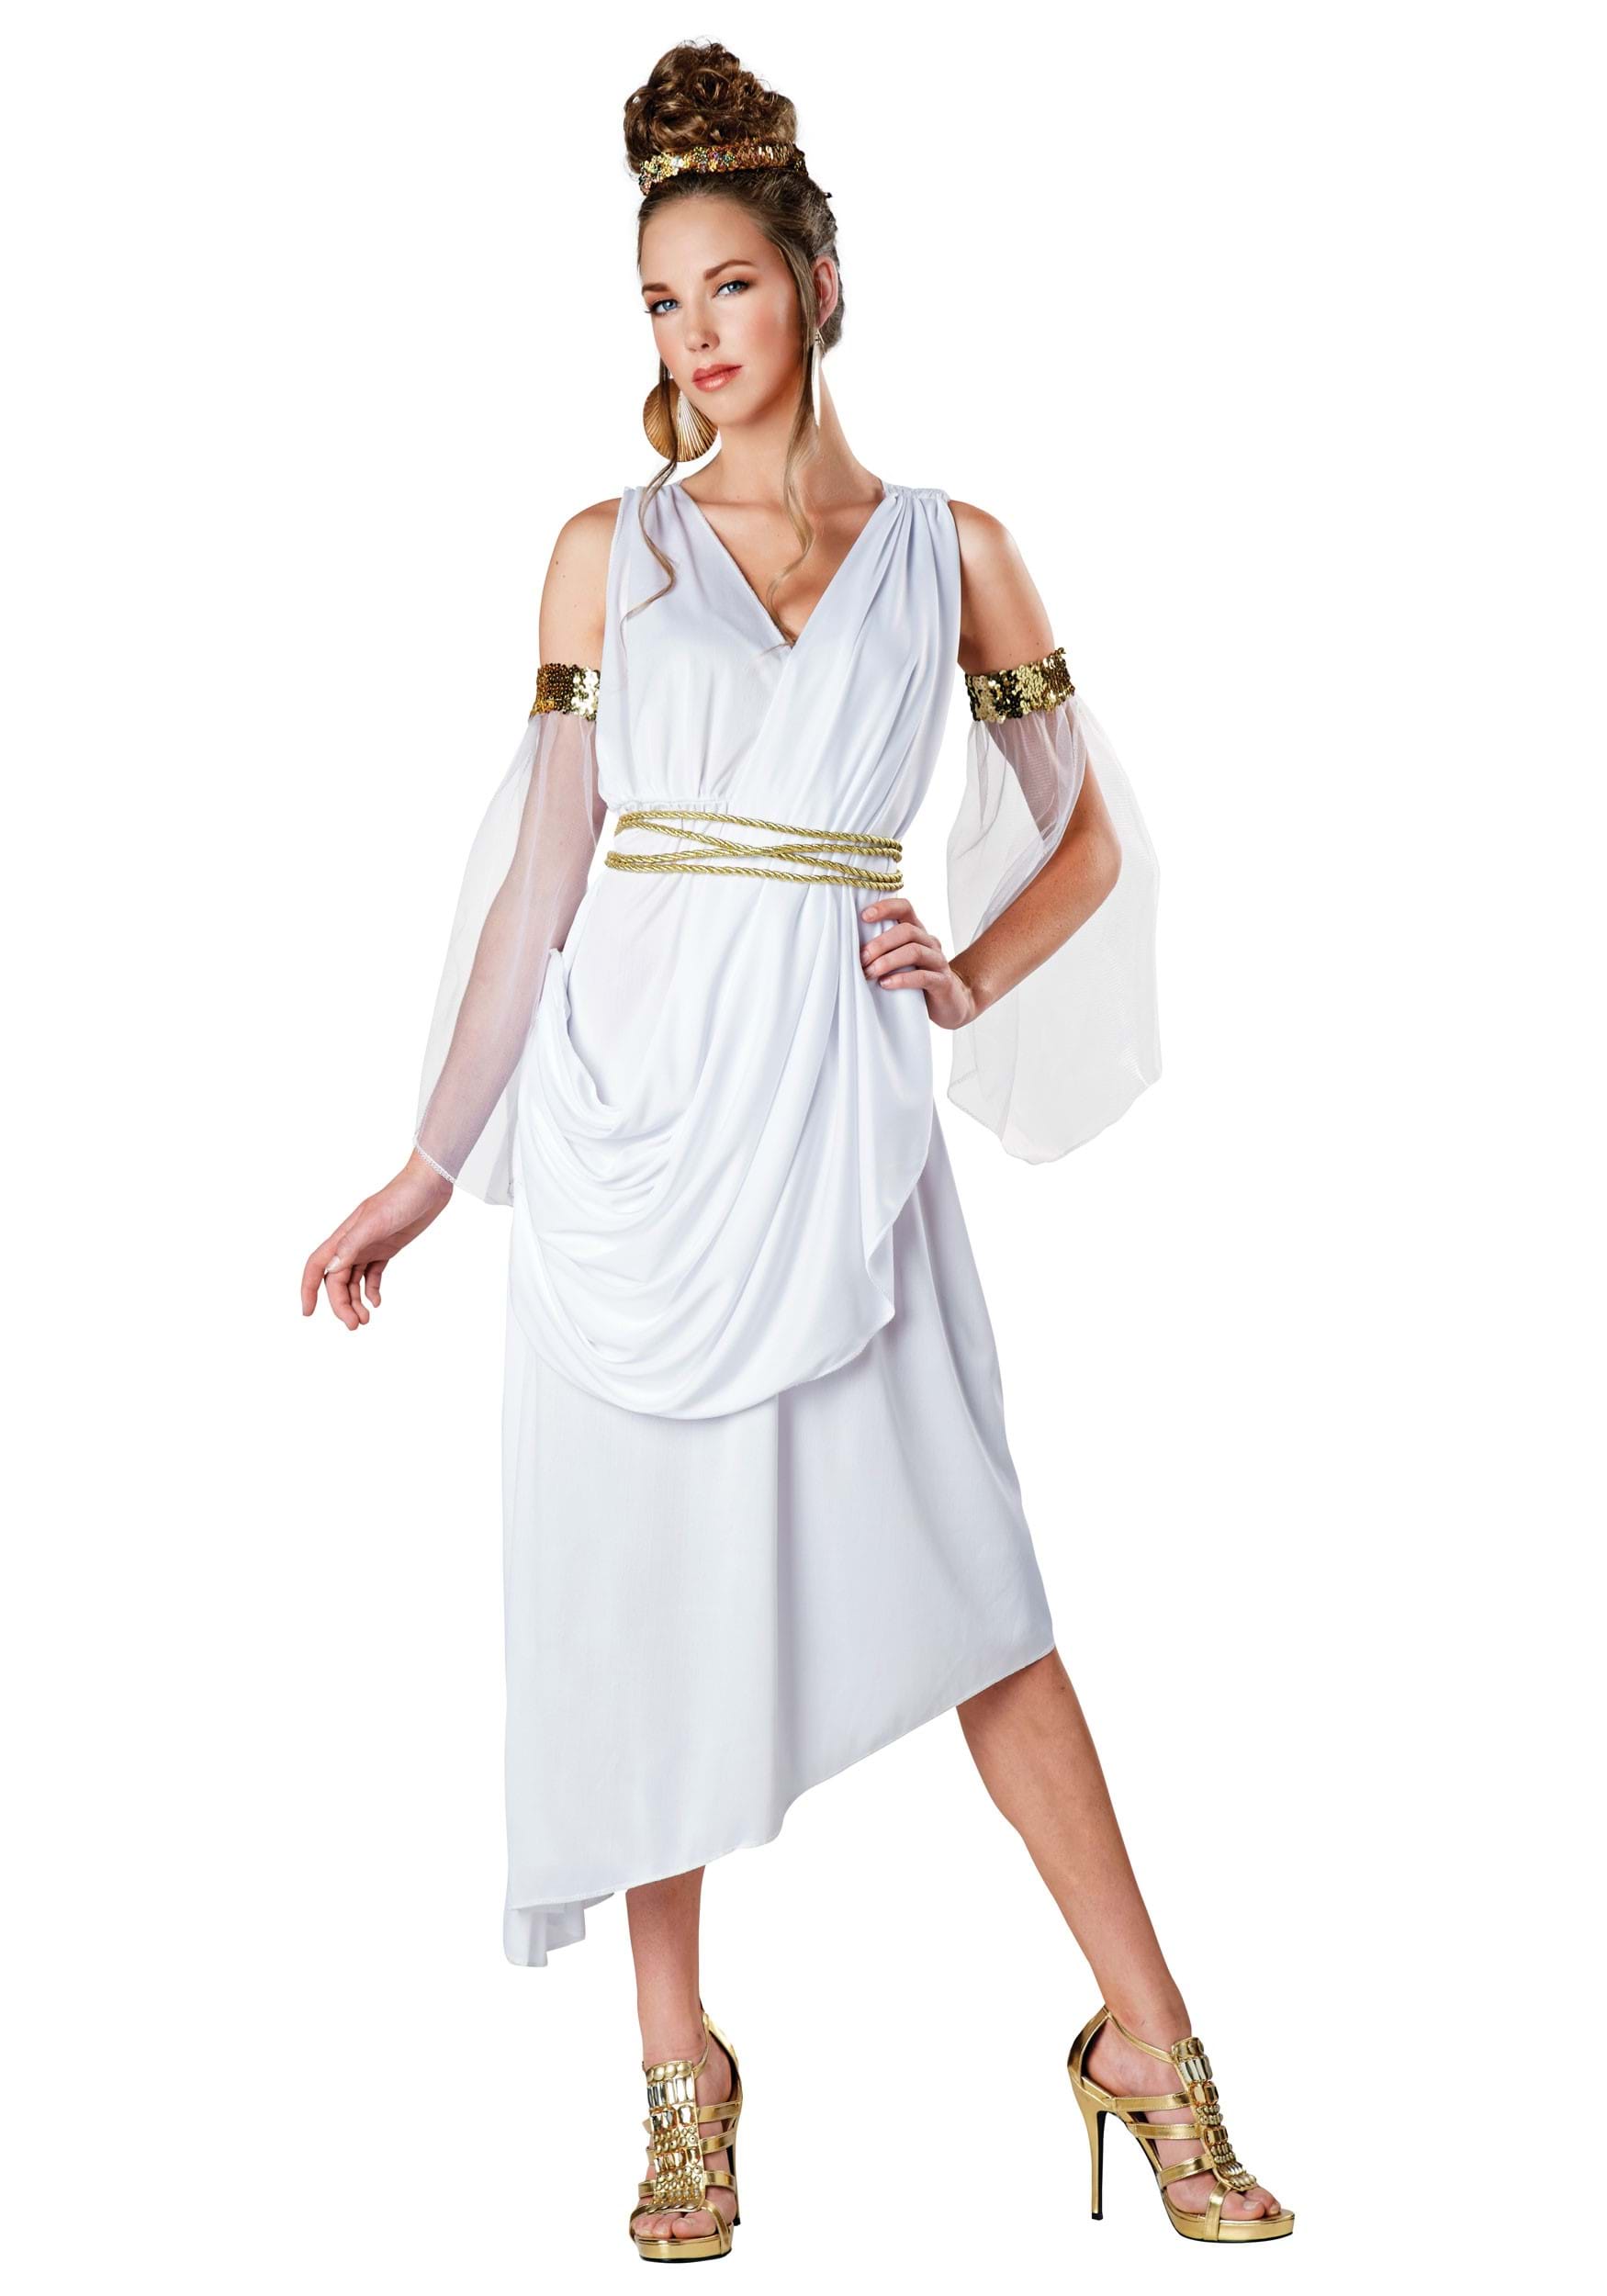 greek queen costume